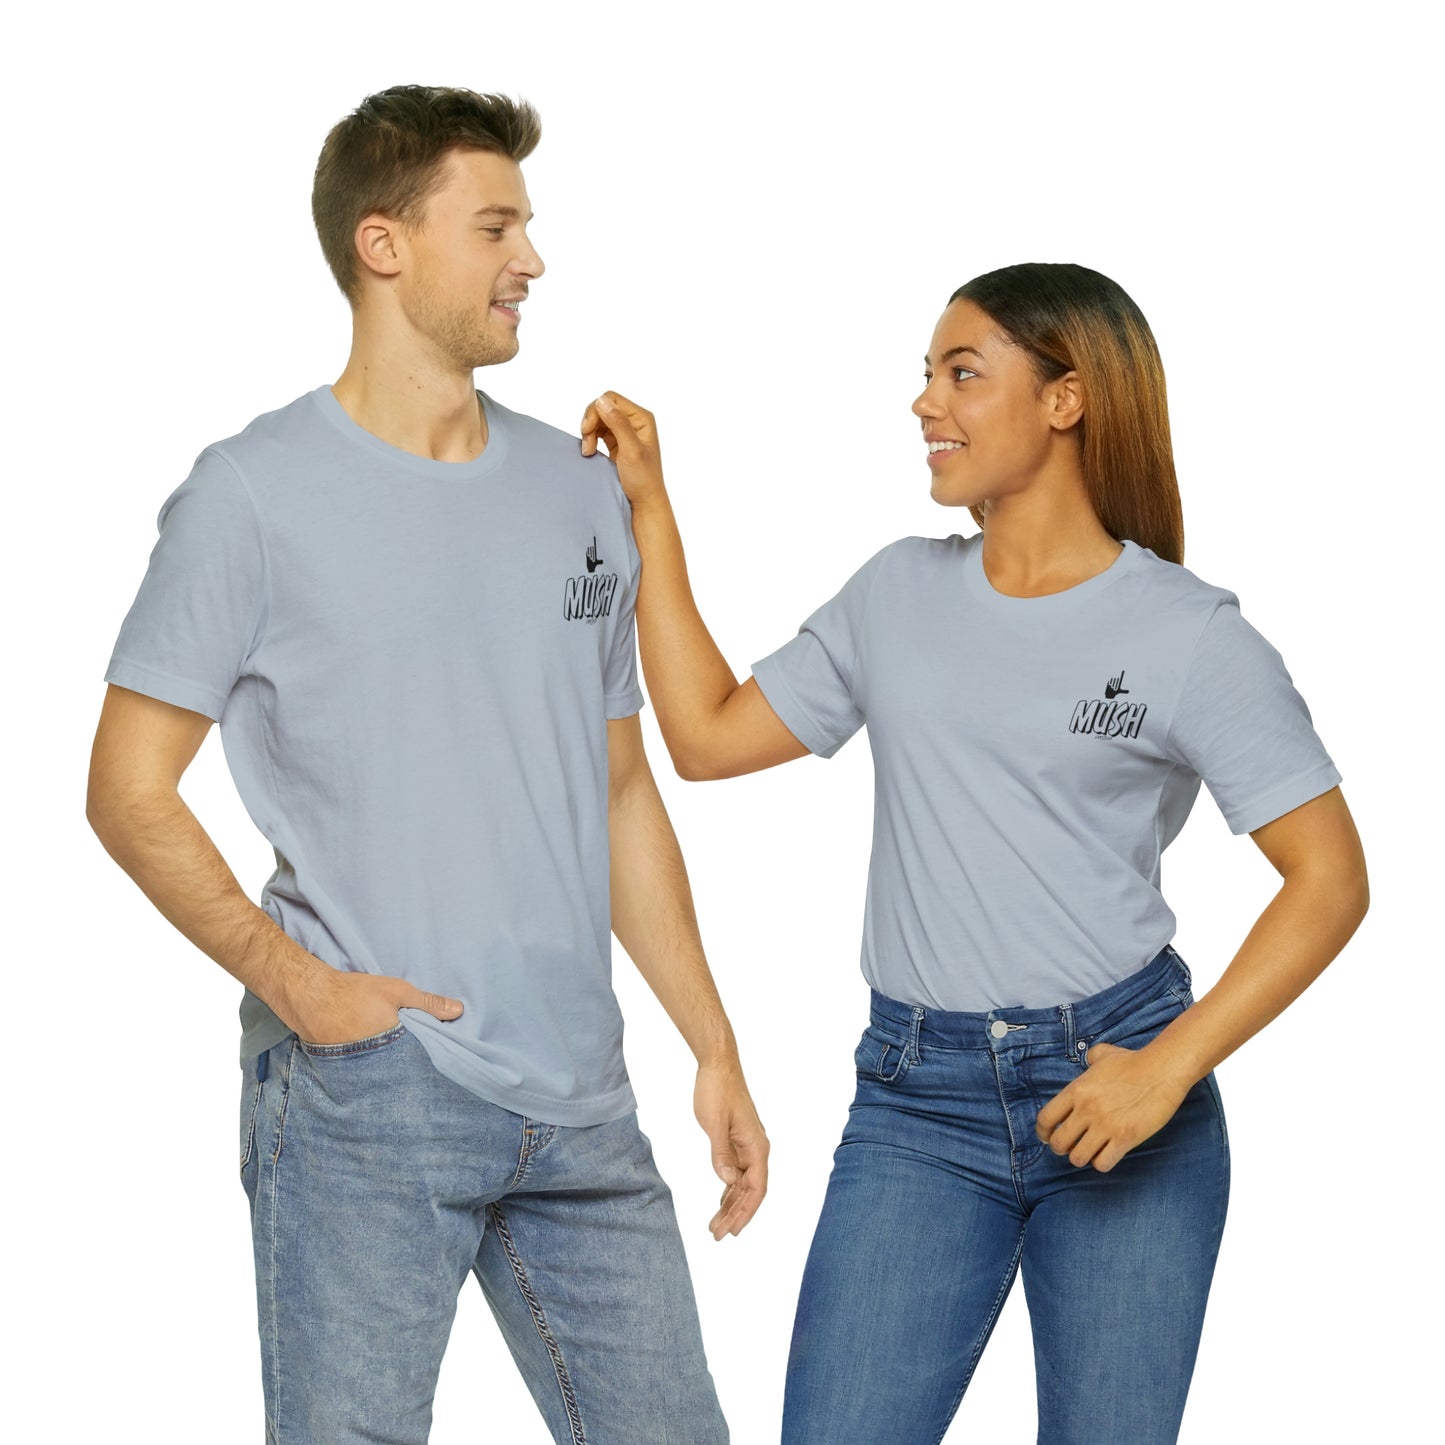 MUSH Jersey Short Sleeve T-Shirt